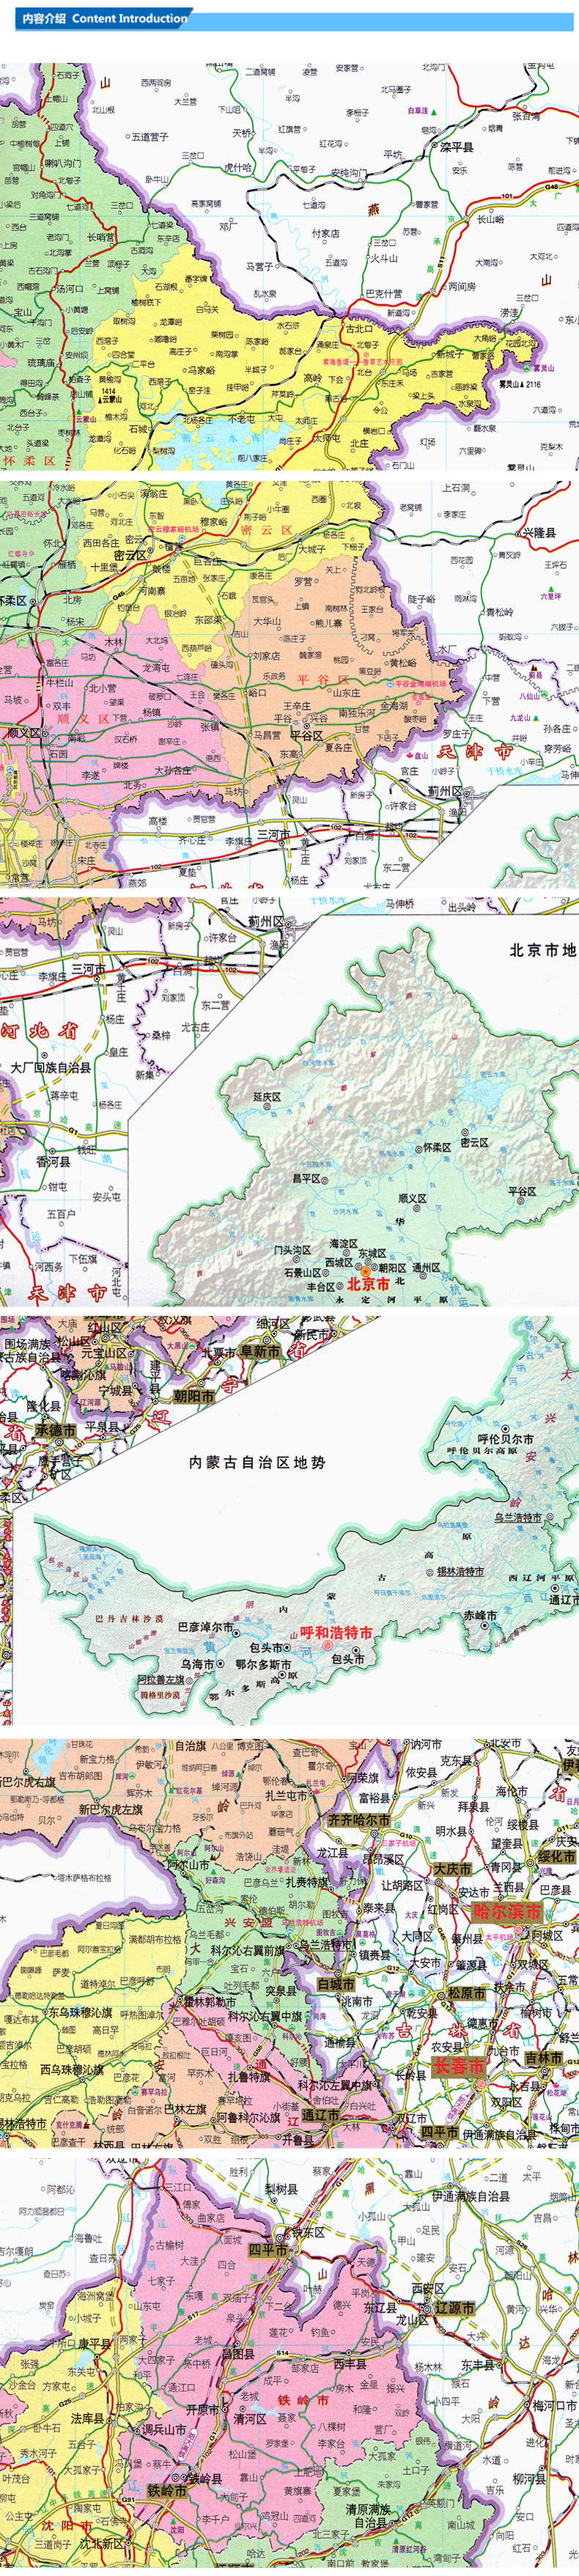 2018新版 大字版 中国地图册 政区 8开 全新地图内容排版 大字清晰